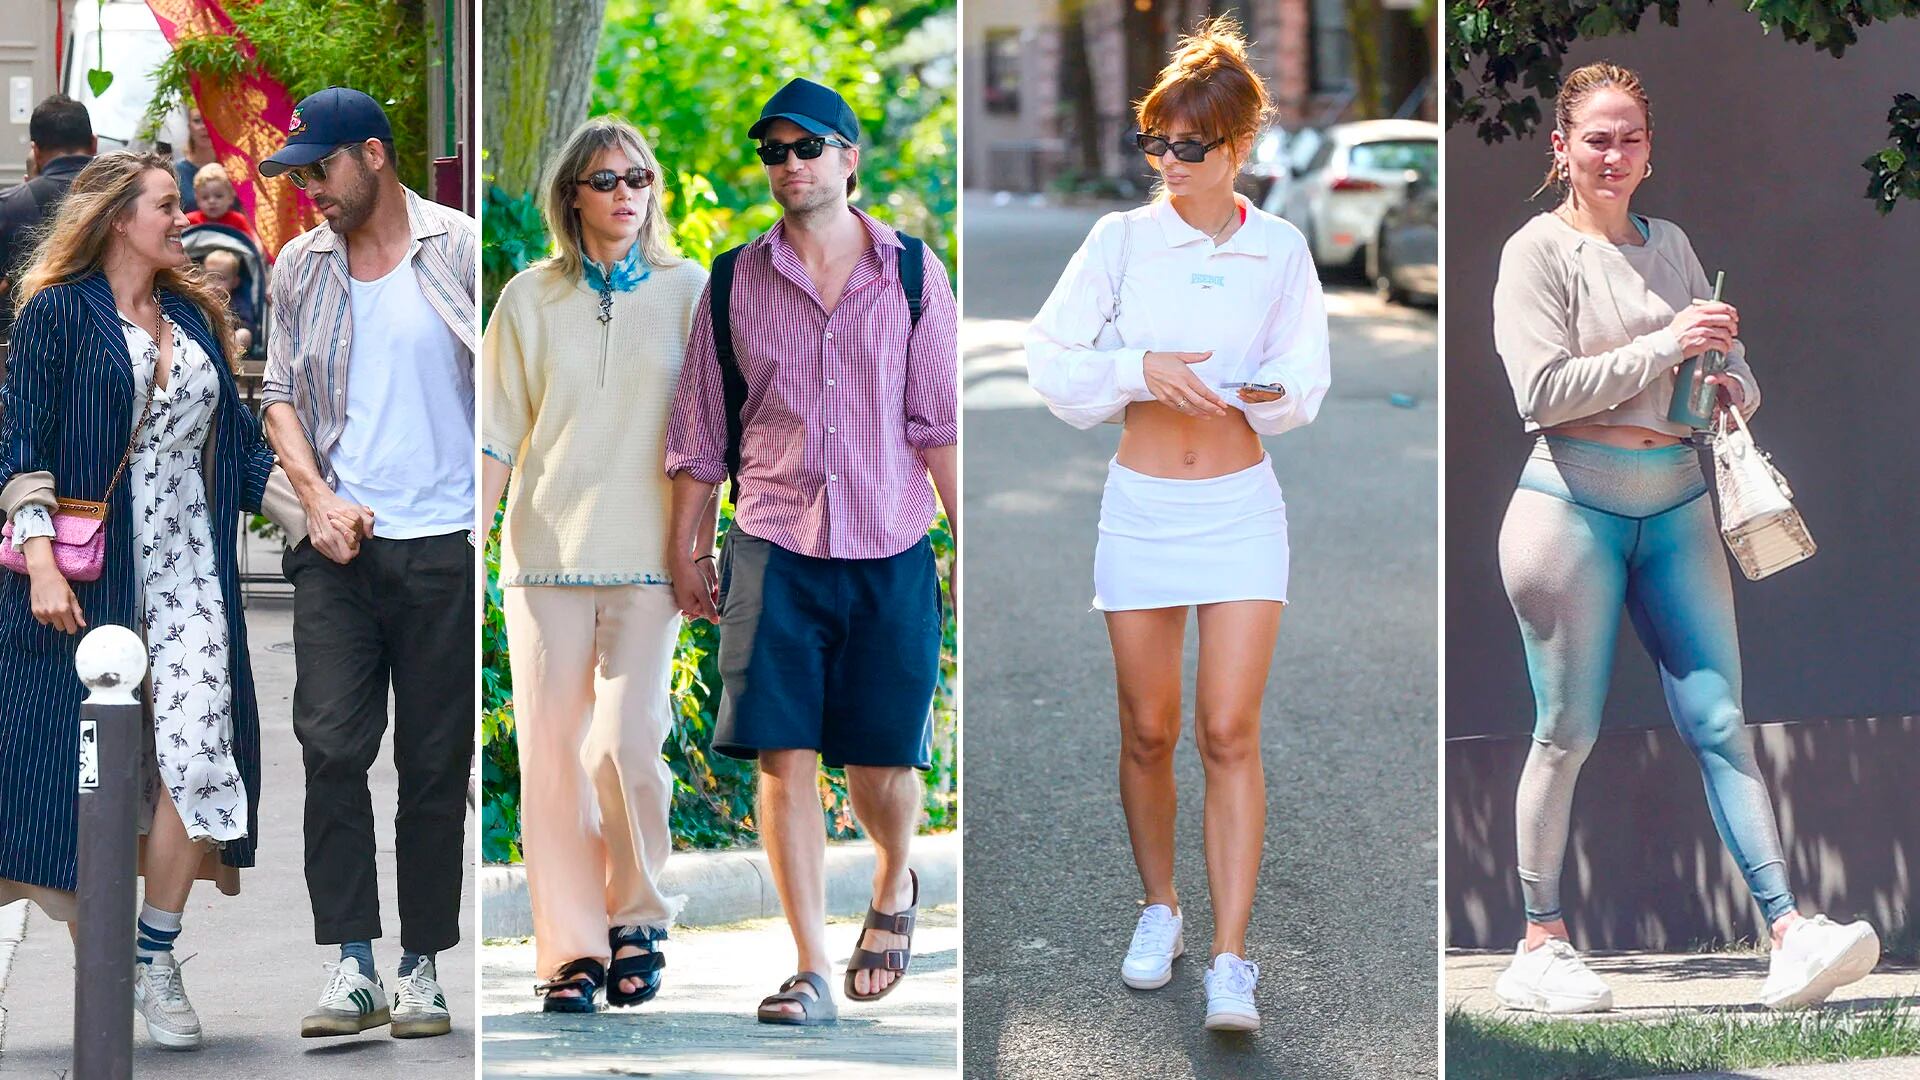 El paseo romántico de Ryan Reynolds y Blake Lively en París, la caminata de Emily Ratajkowski en Nueva York: celebrities en un click